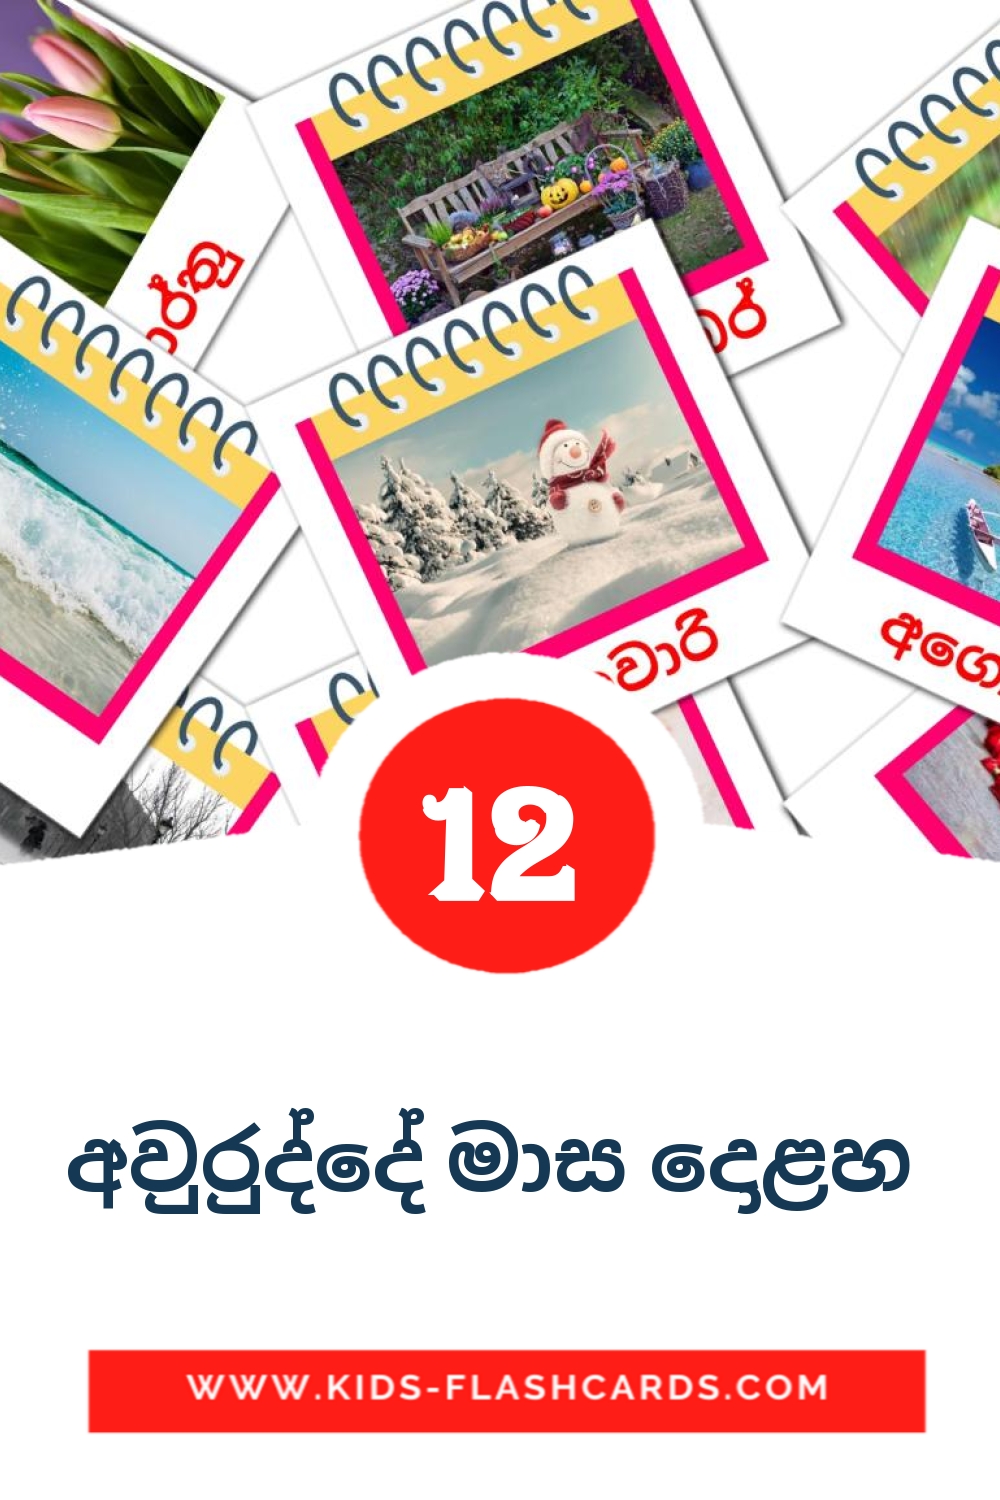 12 Cartões com Imagens de අවුරුද්දේ මාස දොළහ  para Jardim de Infância em sinhala